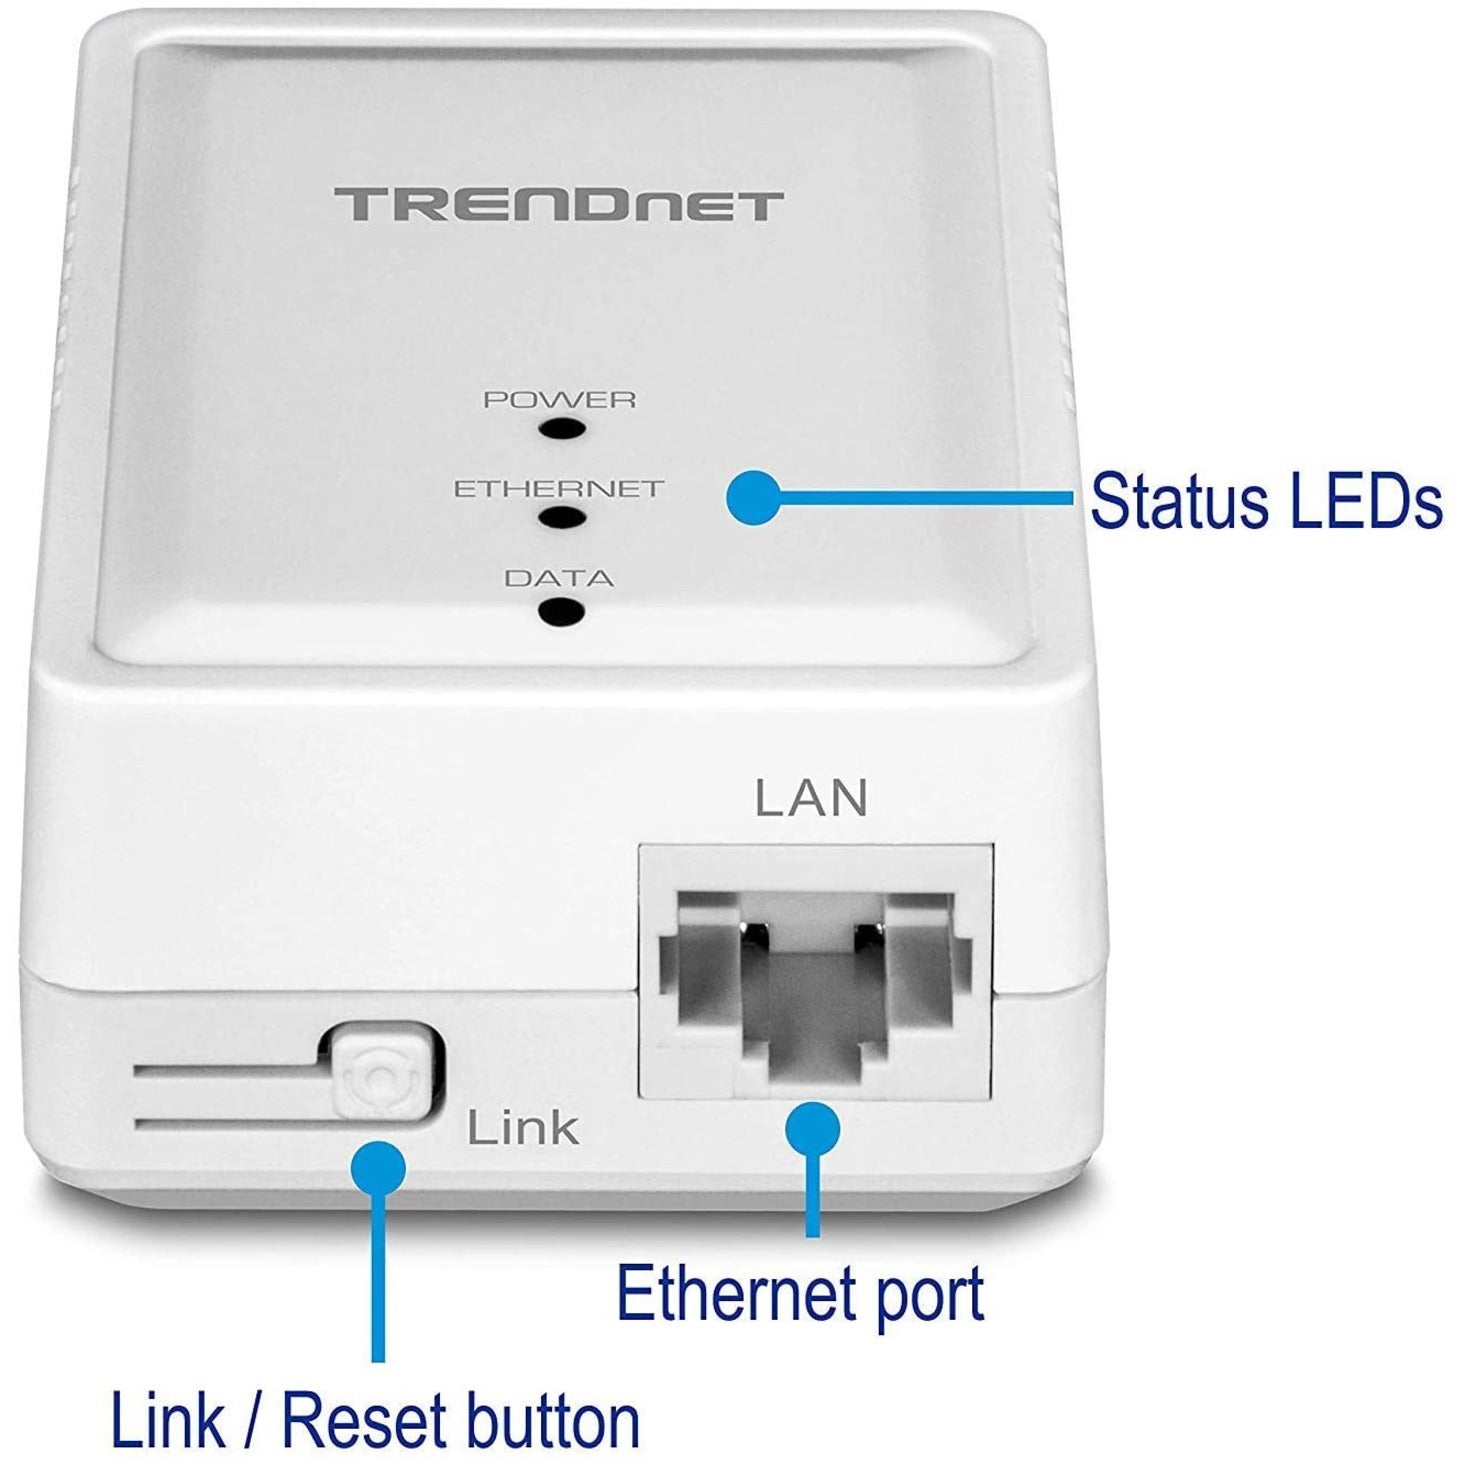 TRENDnet TPL-406E2K Powerline 500 AV Nano Adapter Kit, Plug & Play Install